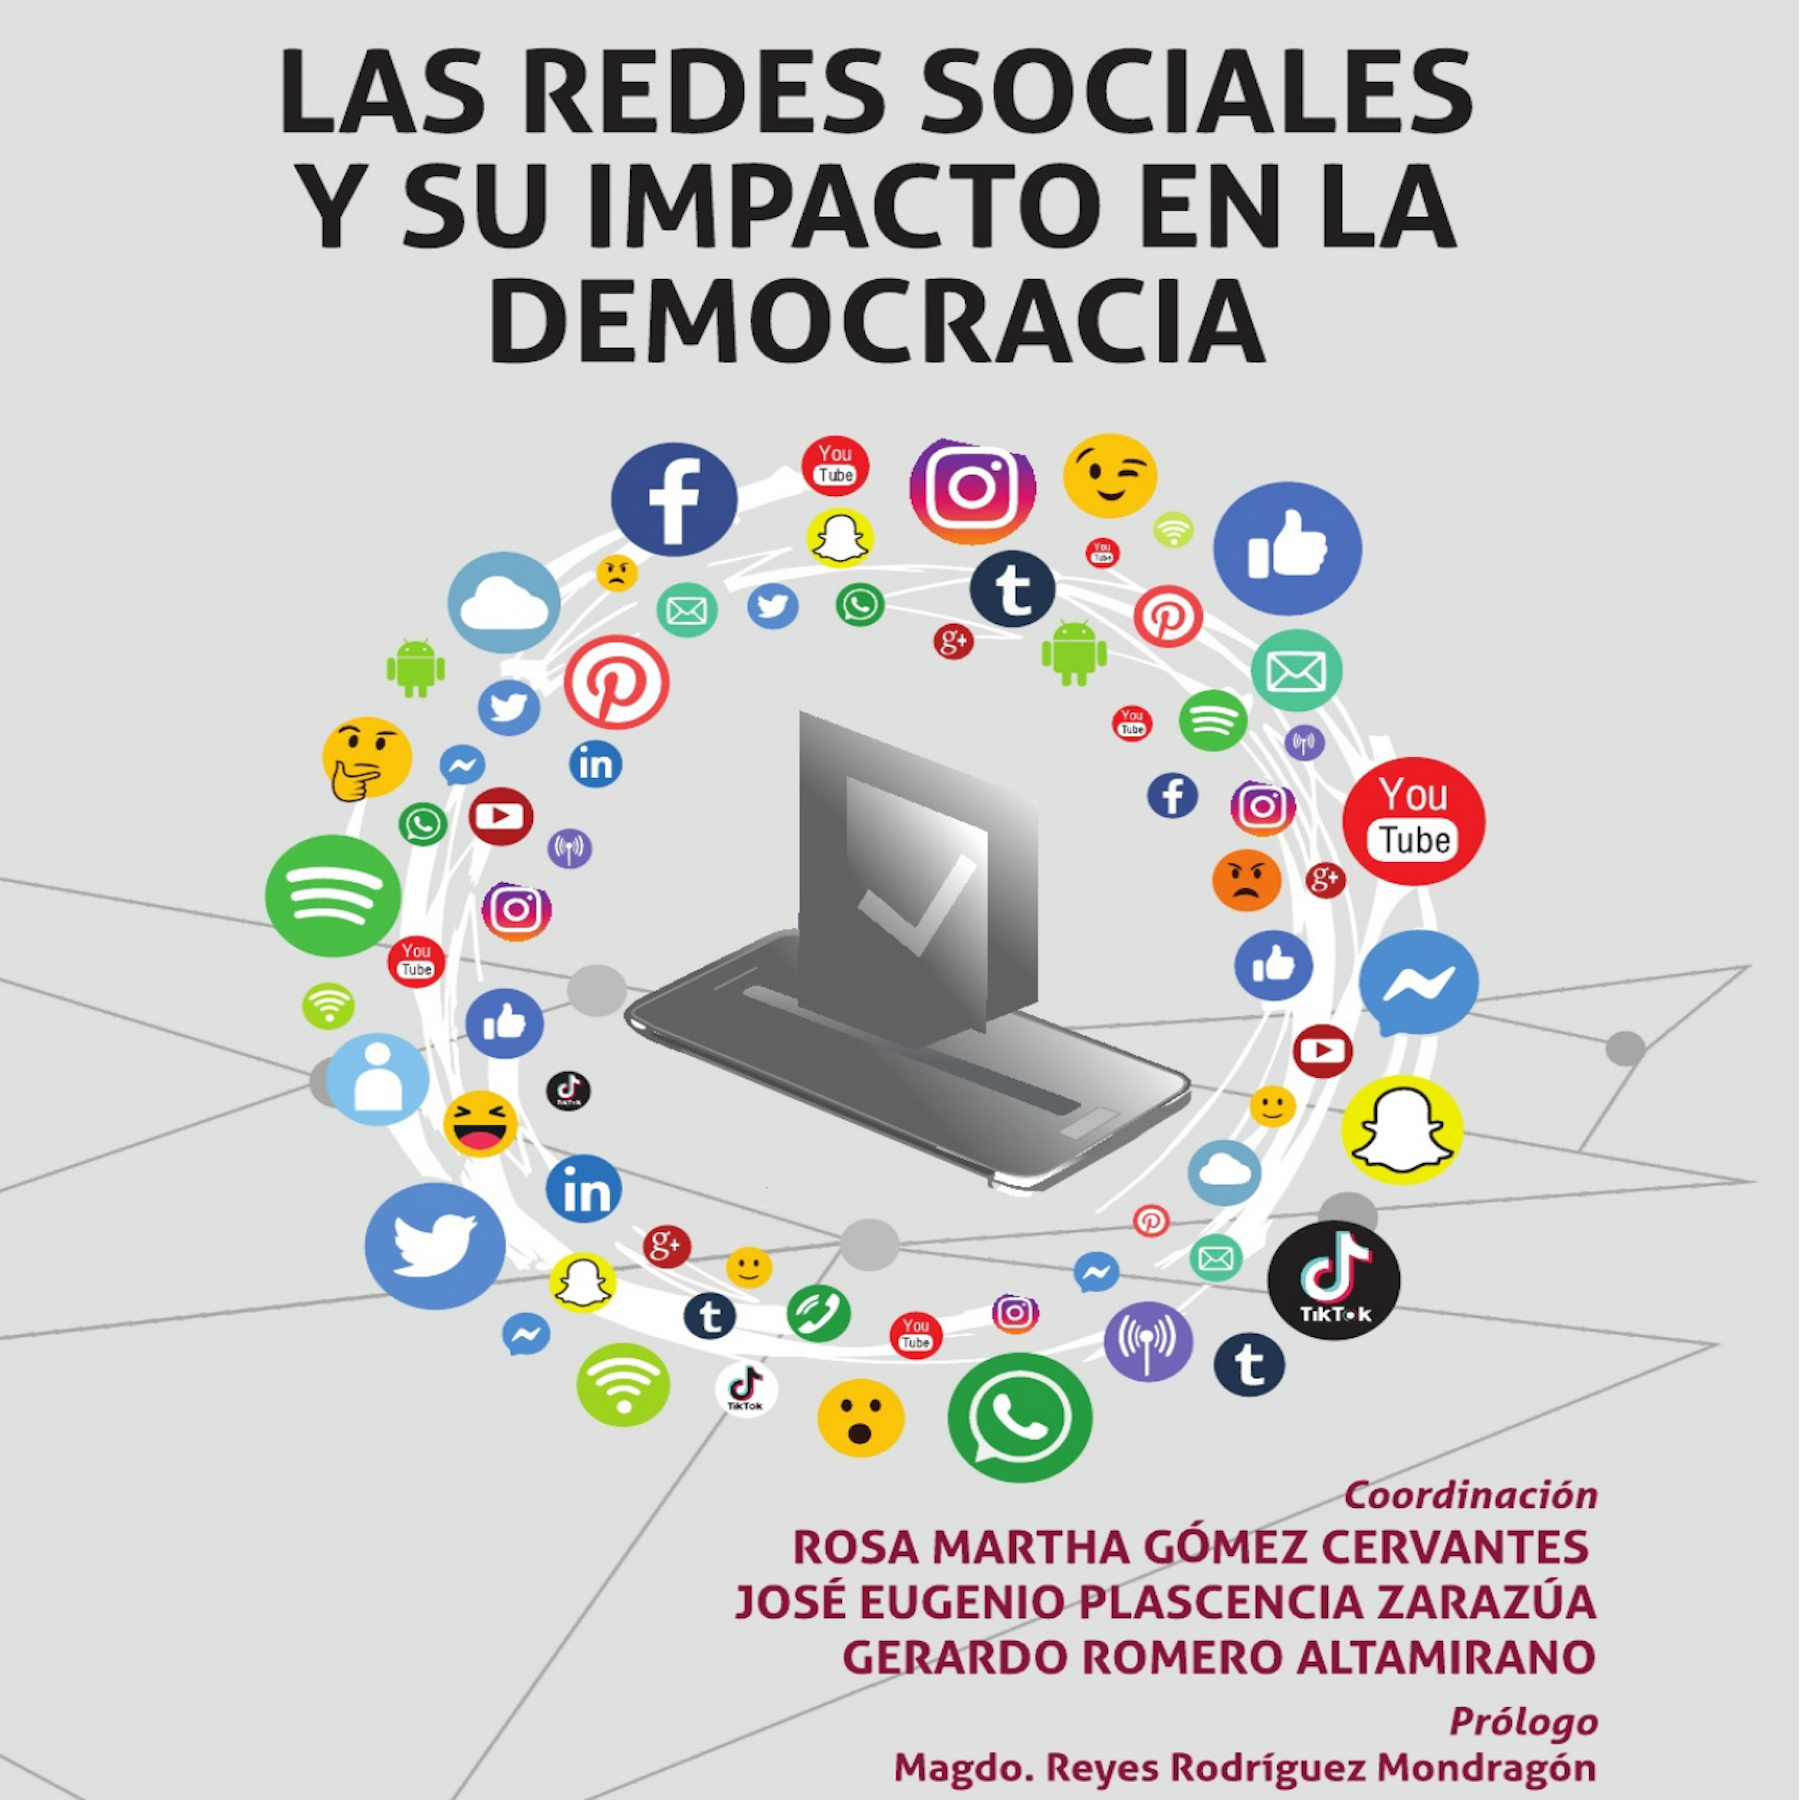 Las redes sociales y su impacto en la democracia